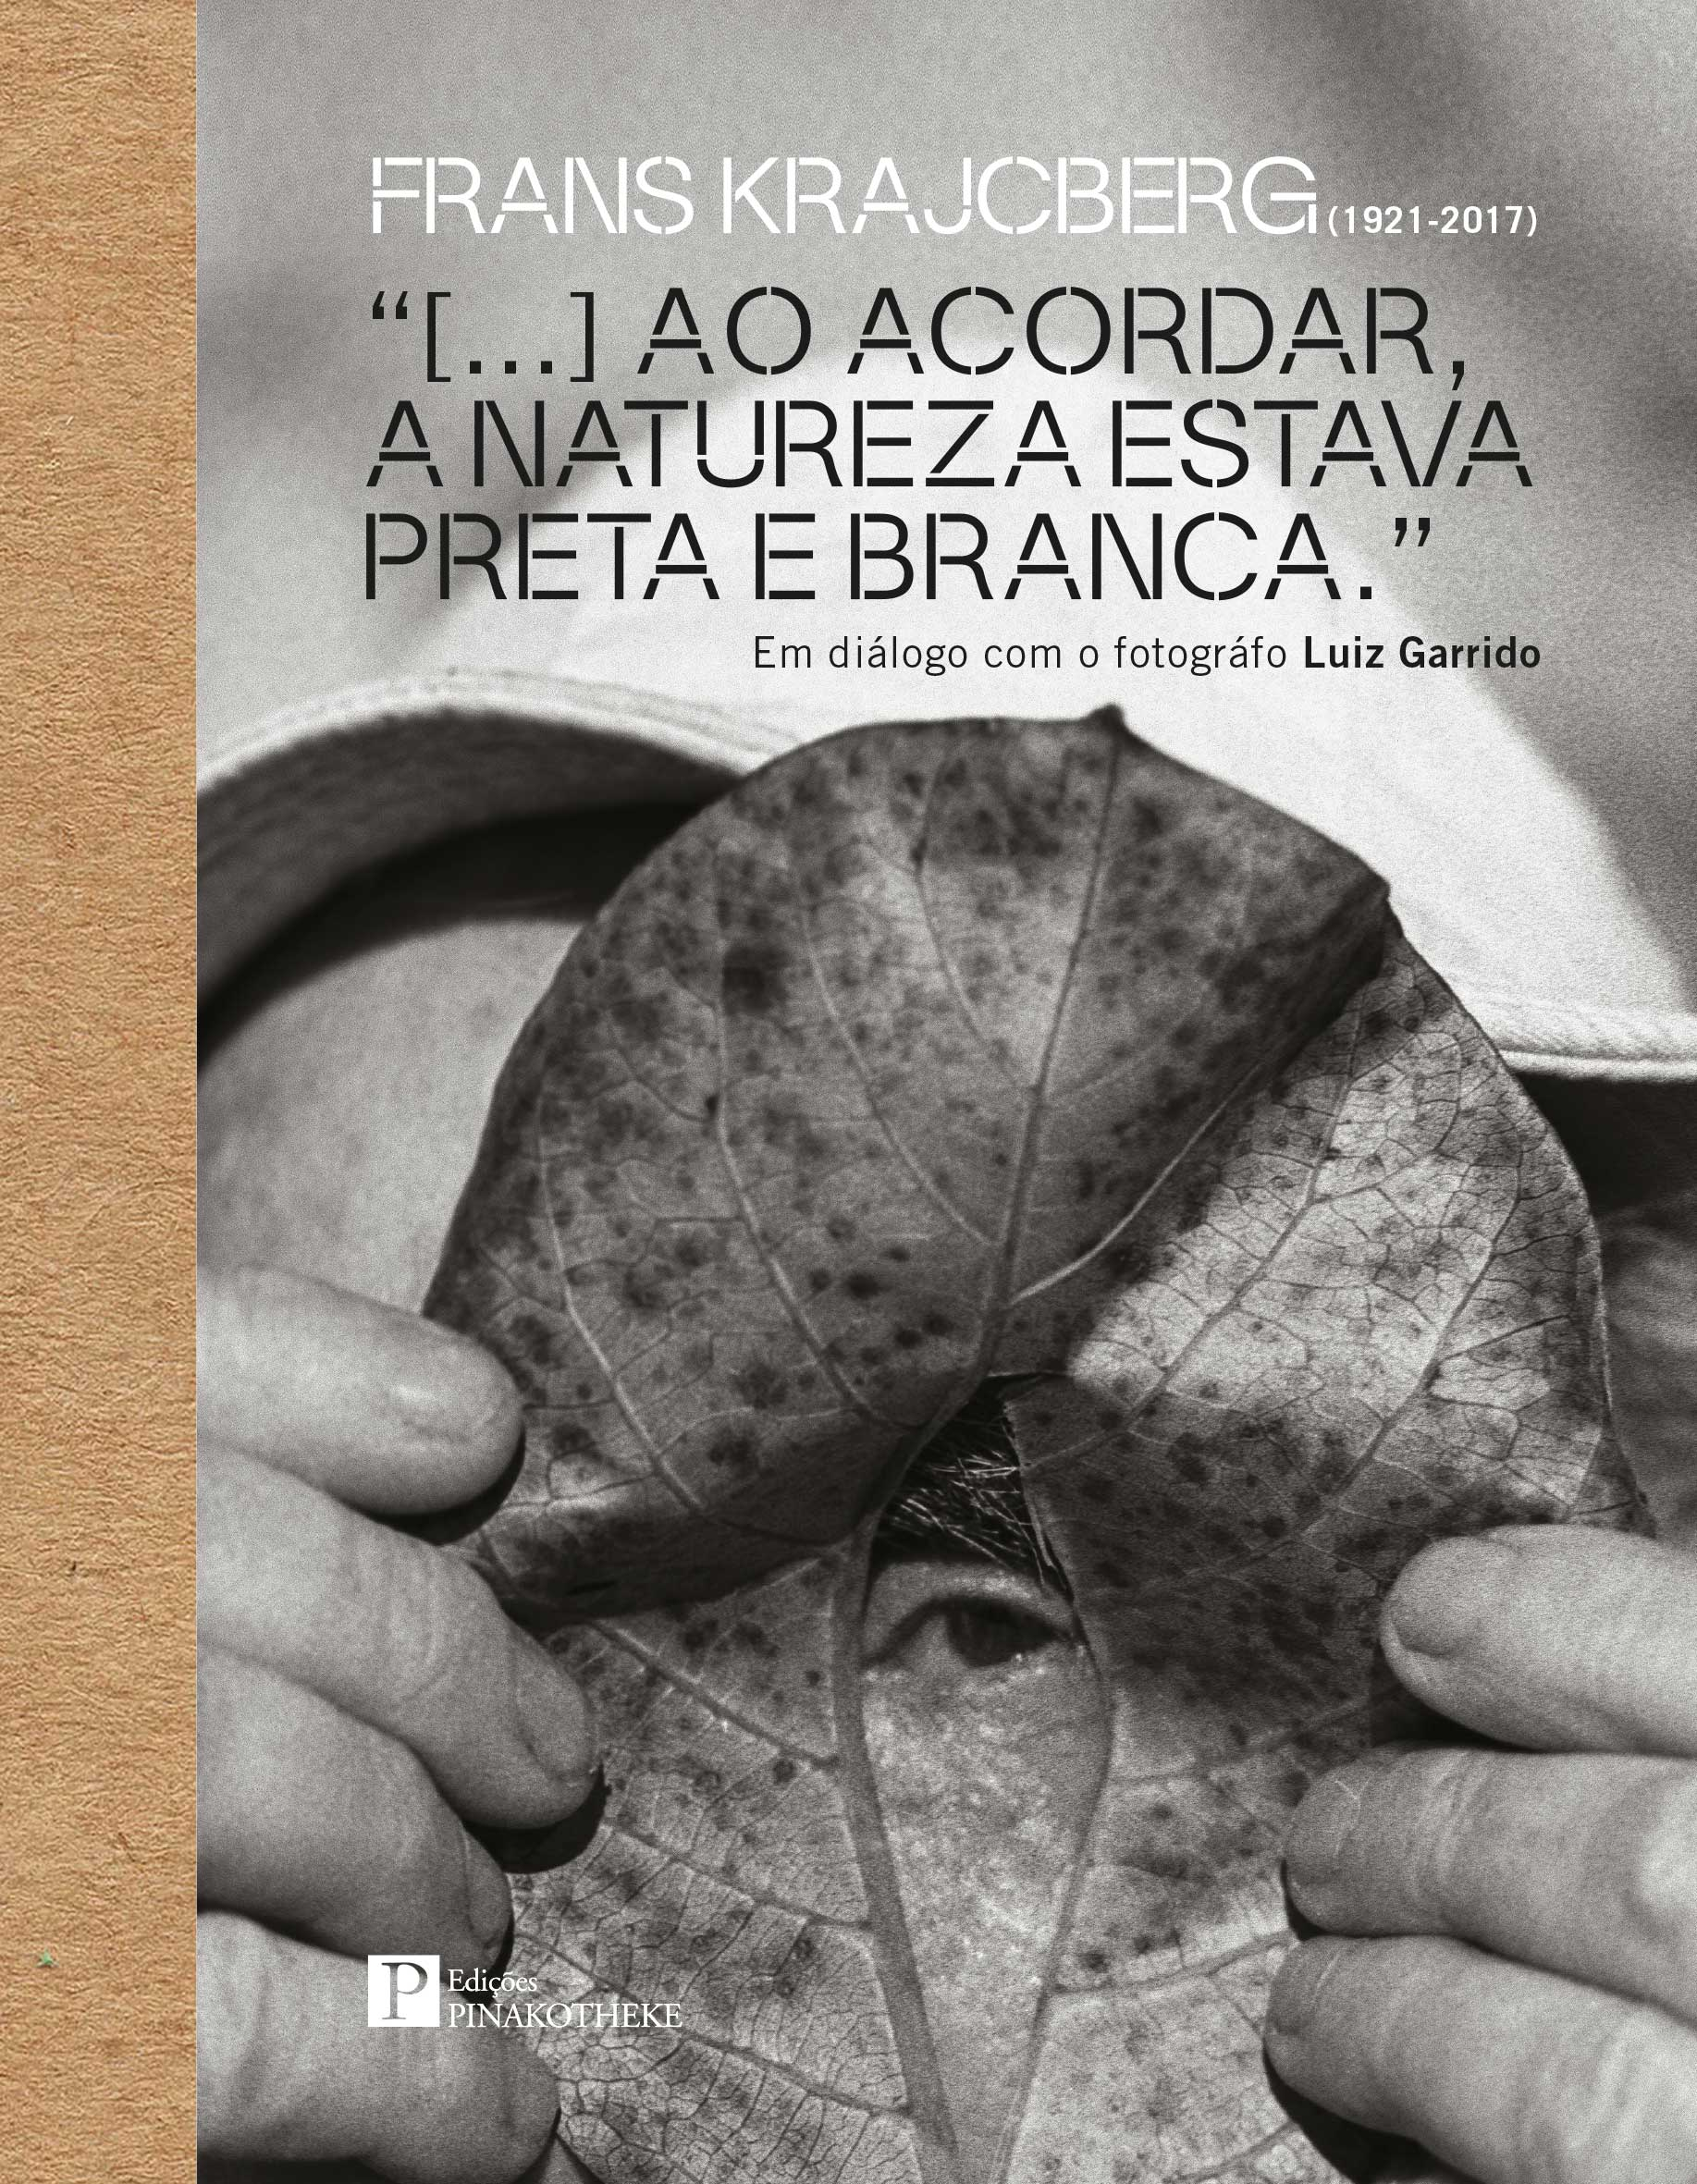 FRANS KRAJCBERG (1921-2017) “[...] AO ACORDAR, A NATUREZA ESTAVA PRETA E BRANCA.” Em diálogo com o fotográfo Luiz Garrido